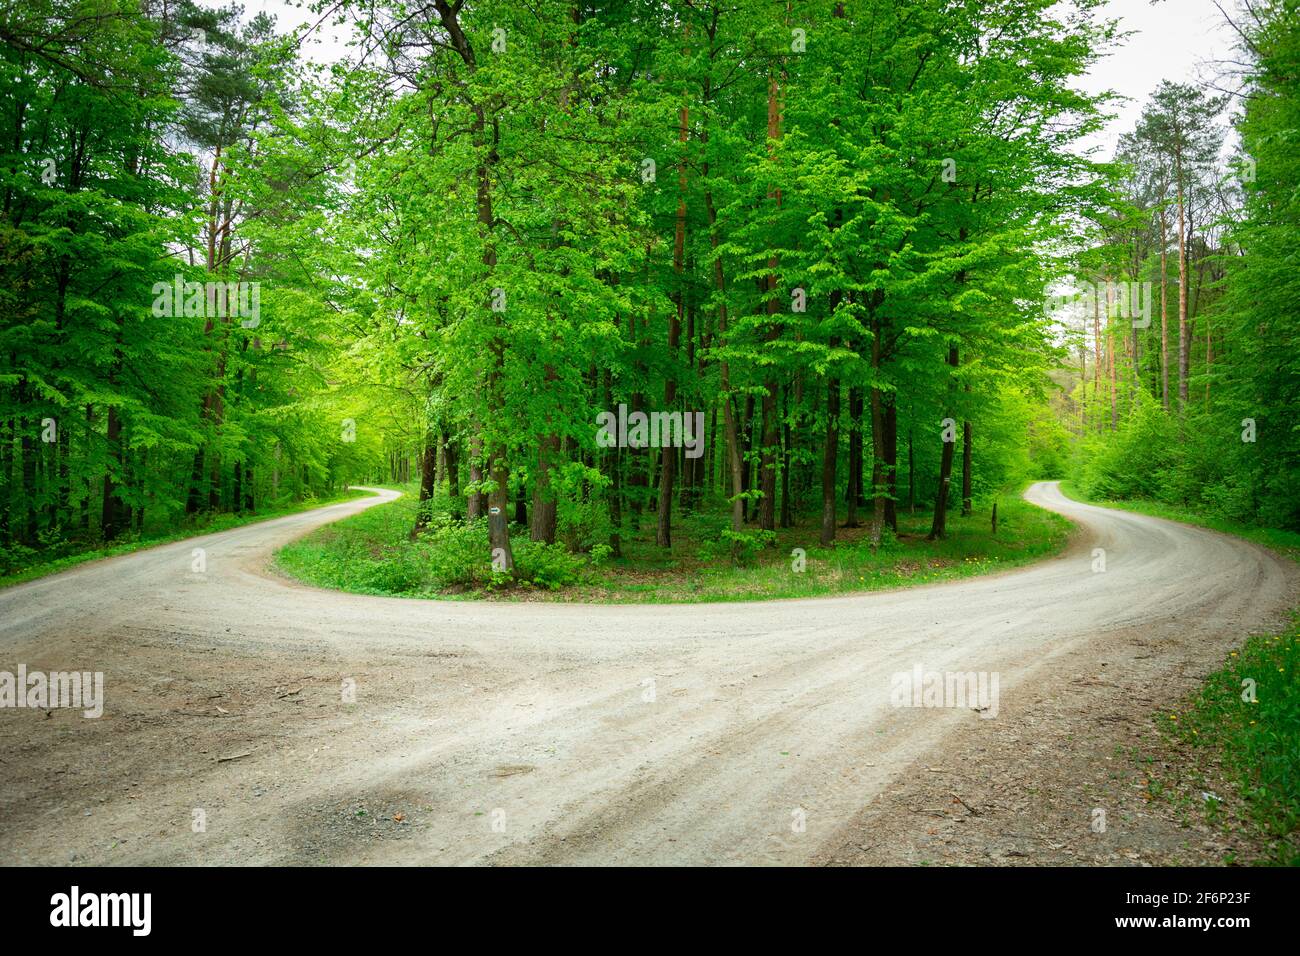 Eine scharfe Wendung in einem grünen Wald, einer Insel mit Bäumen, Nowiny, Lubelskie, Polen Stockfoto